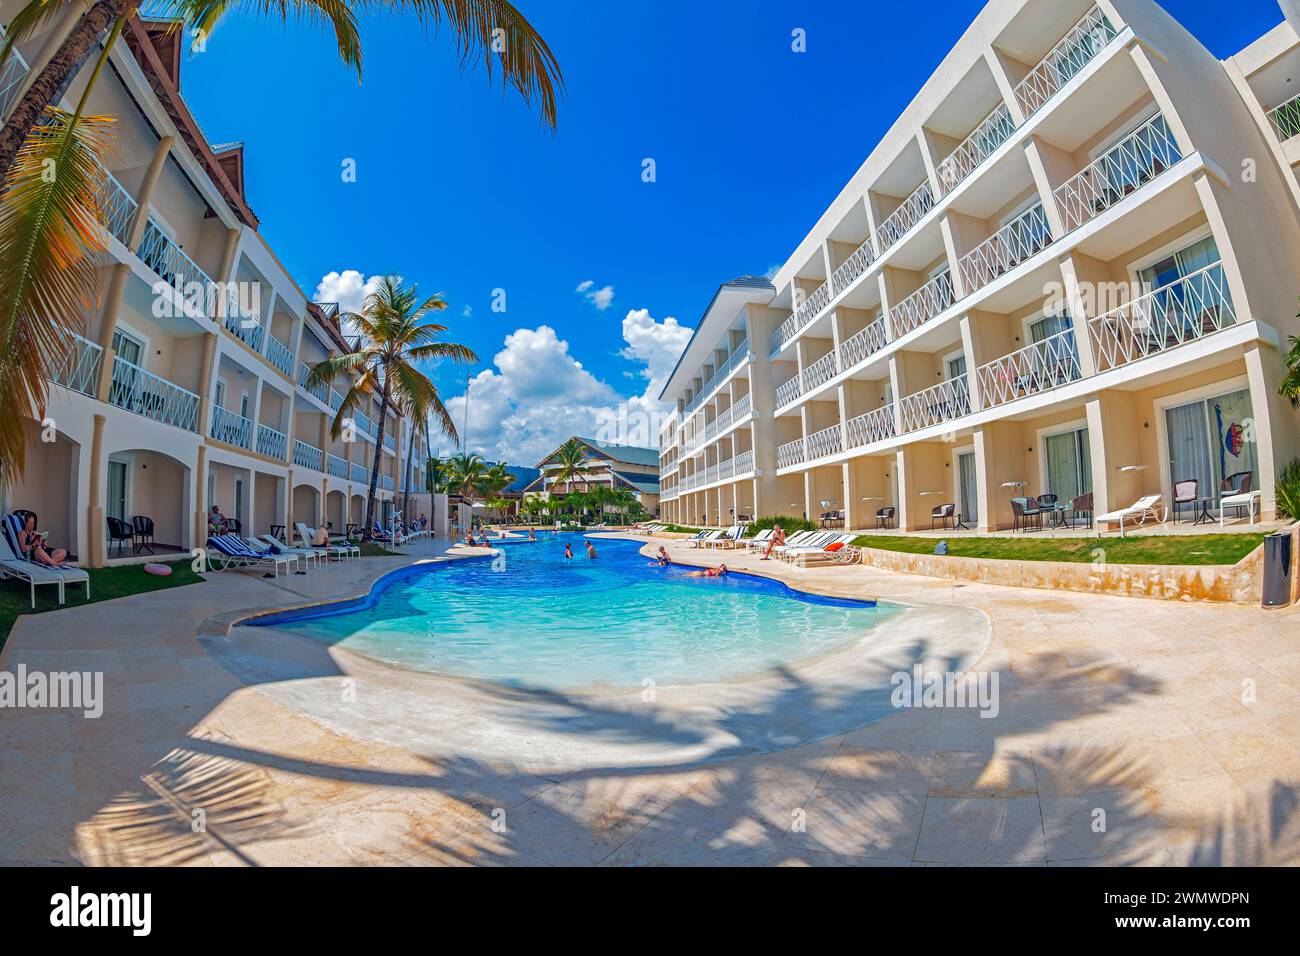 PUNTA CANA, DOMINIKANISCHE REPUBLIK - 11. MÄRZ 2020: Ferienort BE LIVE in der Dominikanischen Republik, einer Insel, die Teil des Grossargens der Antillen ist Stockfoto